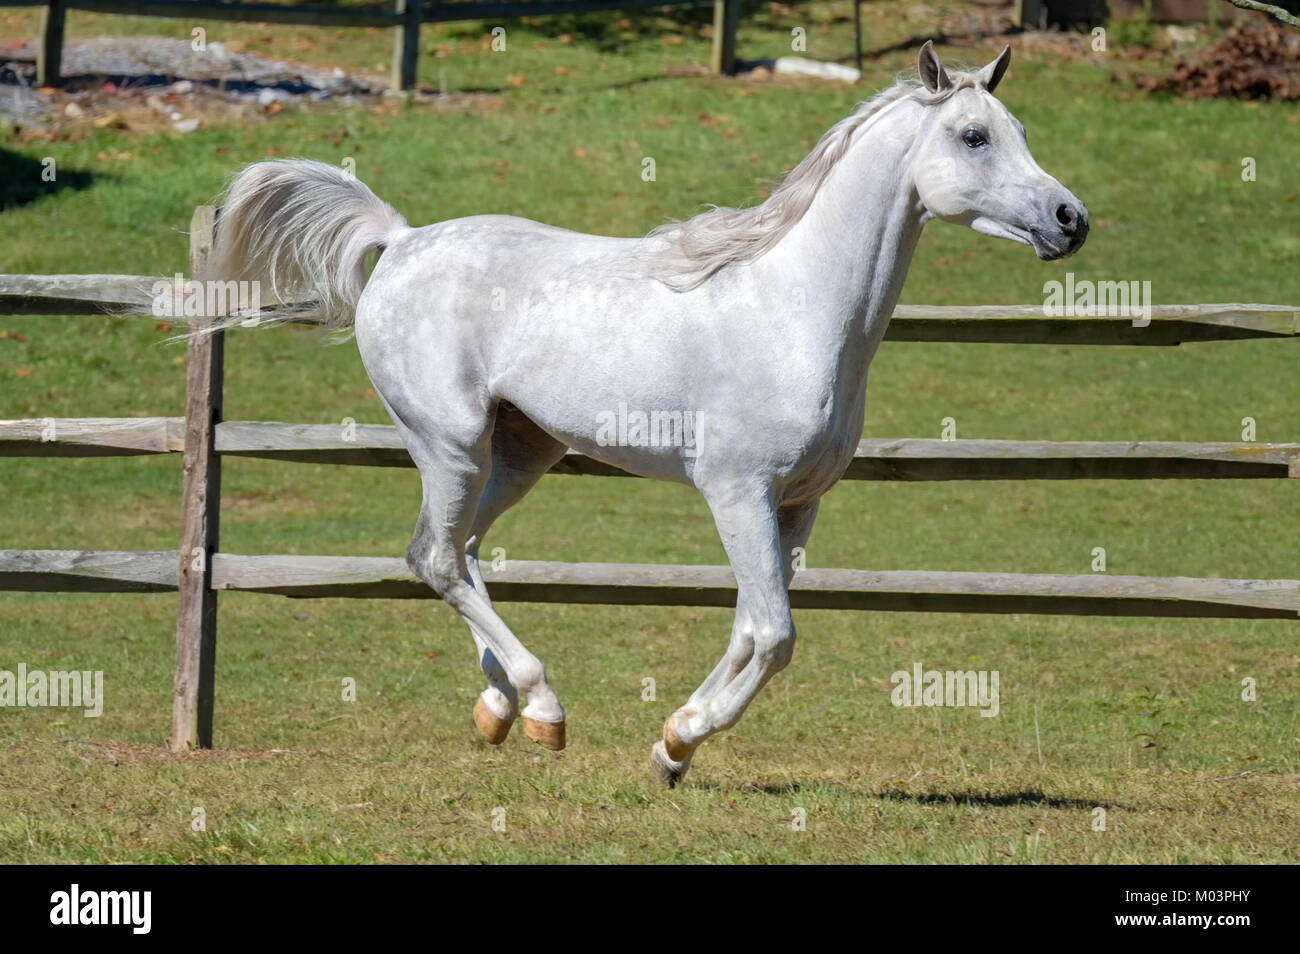 Caballo que corre a lo largo de valla con las cuatro patas en el suelo, vista lateral de un hermoso blanco Arabian stallion en movimiento. Foto de stock